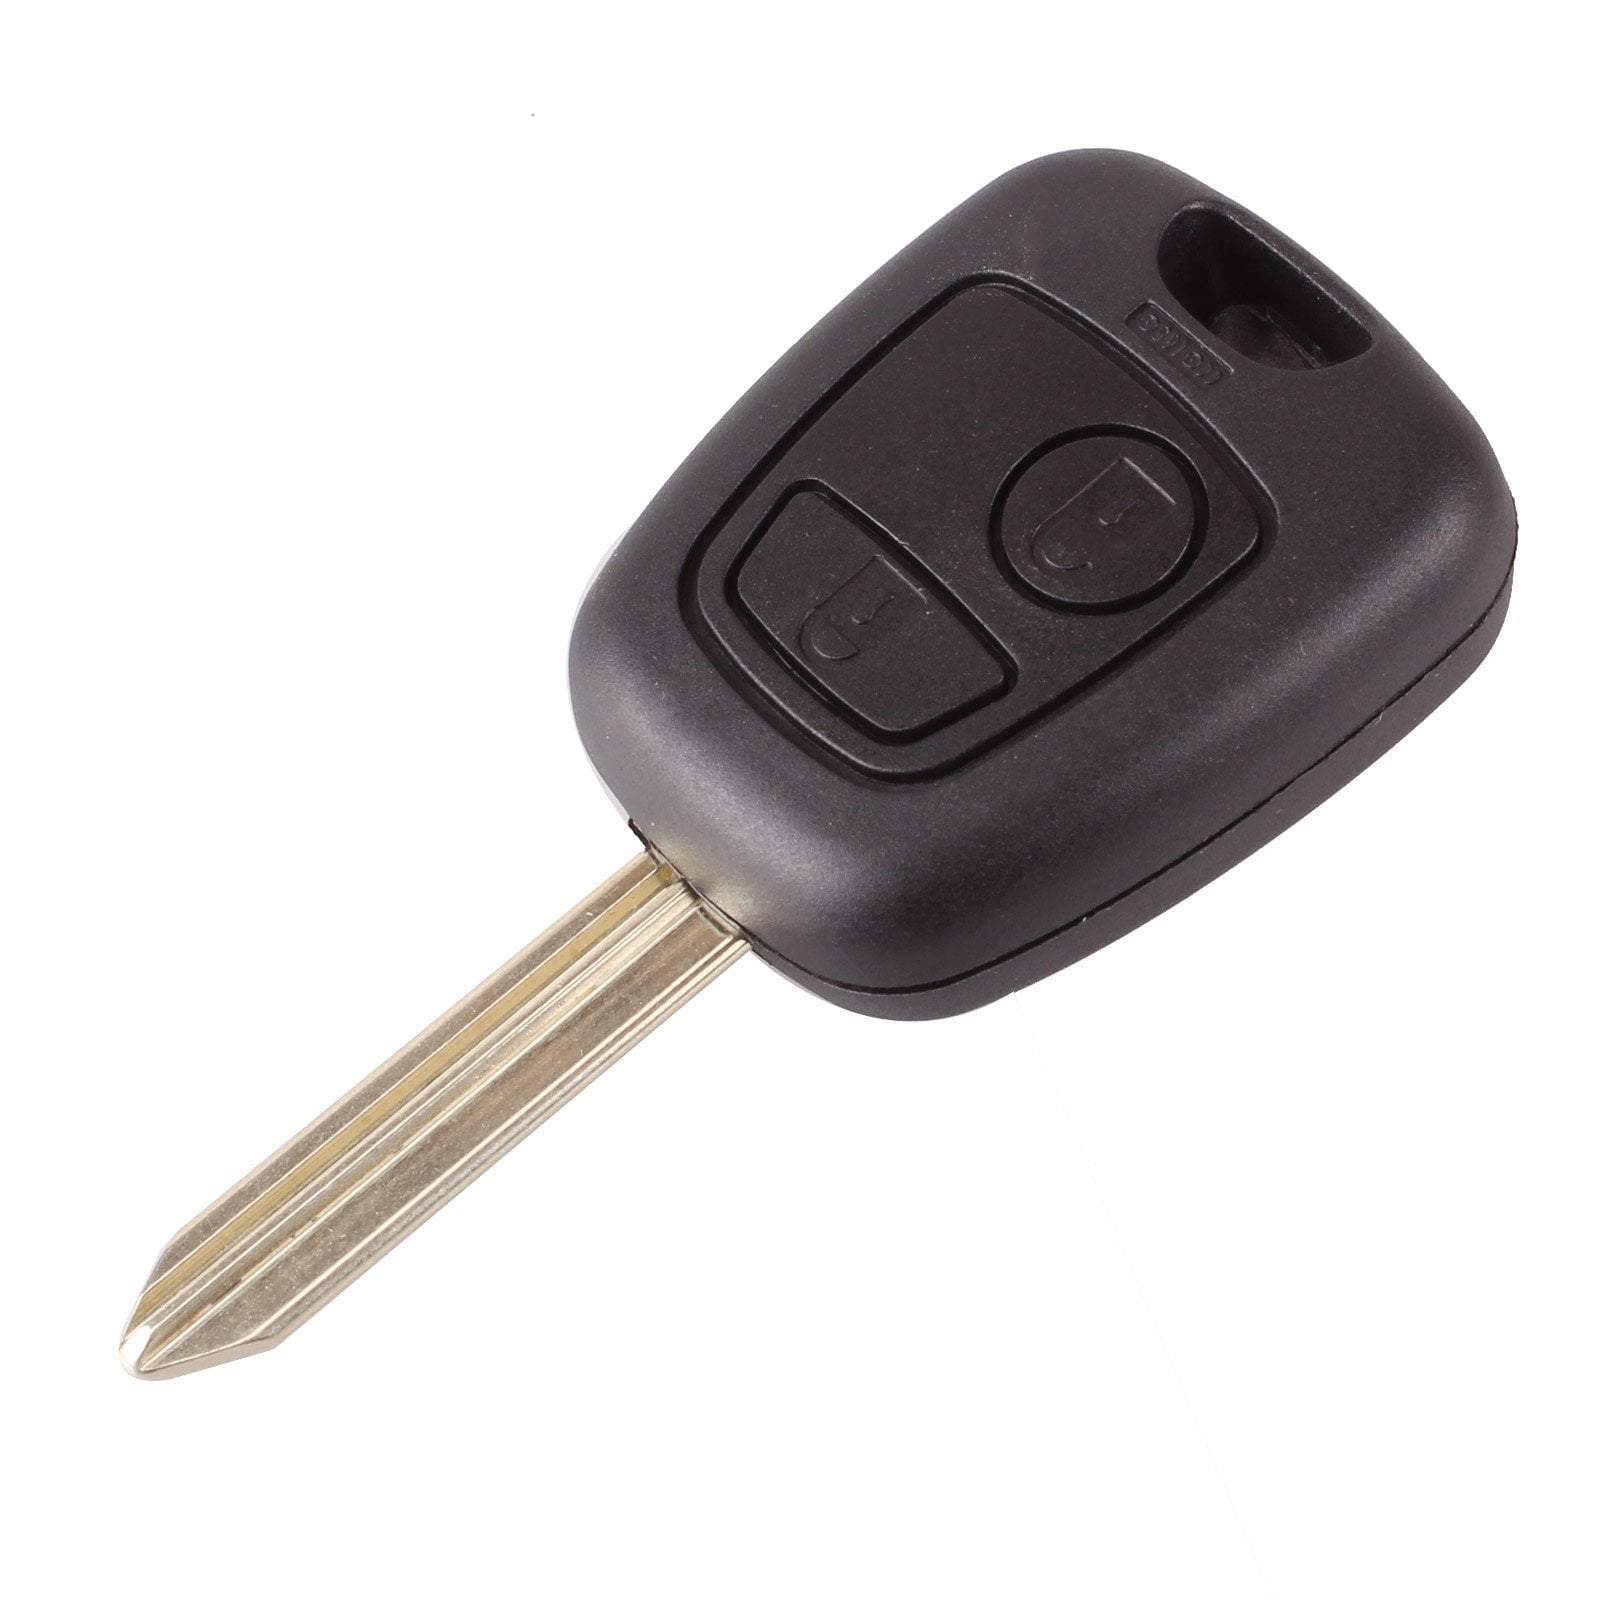 Fekete színű, 2 gombos Peugeot kulcs, kulcsház SX9 kulcsszárral.